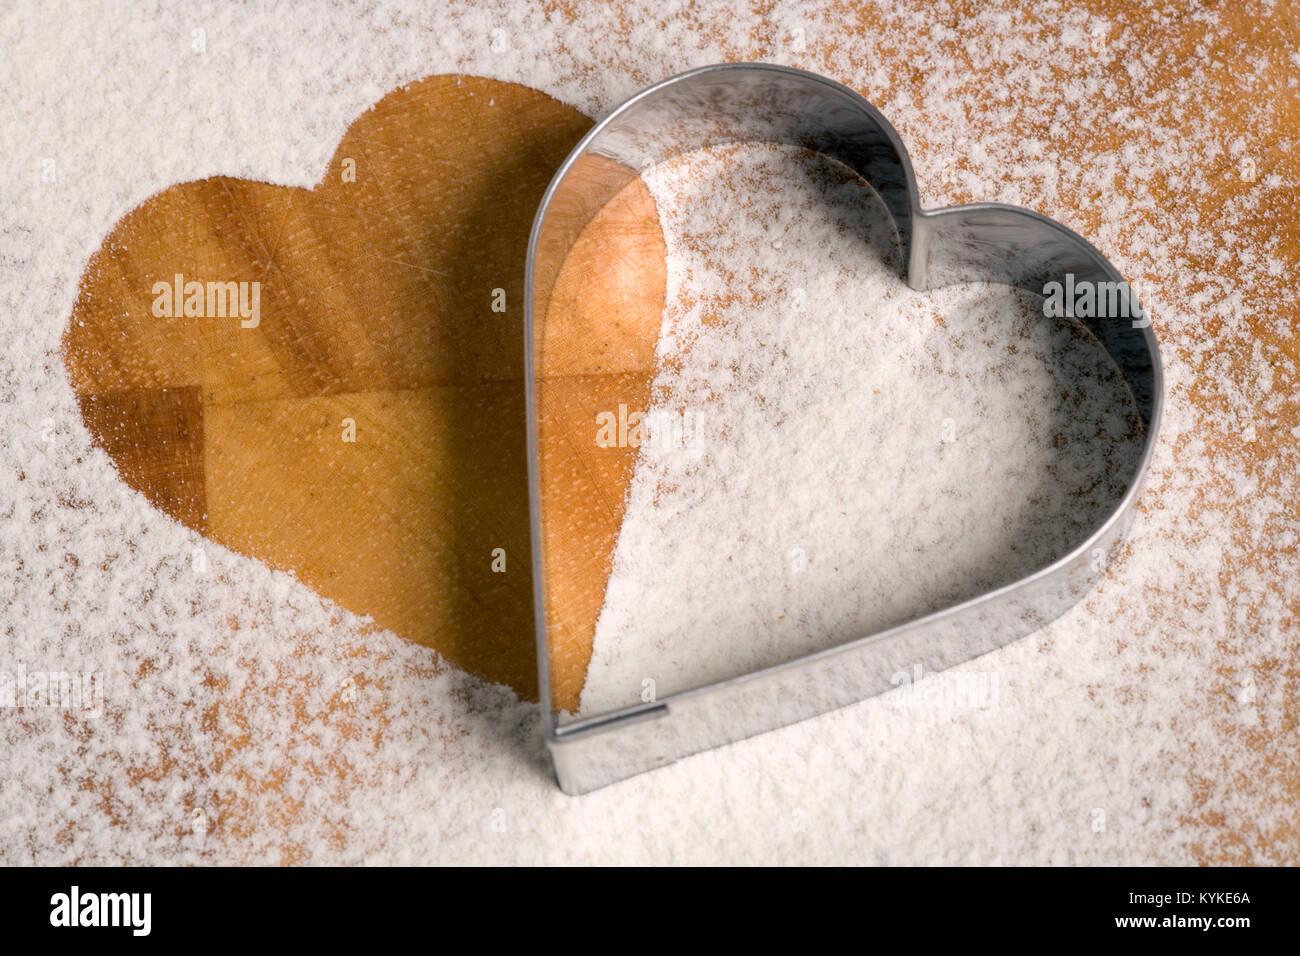 Emporte-pièce en forme de cœur sur un plan de travail saupoudré de farine Banque D'Images